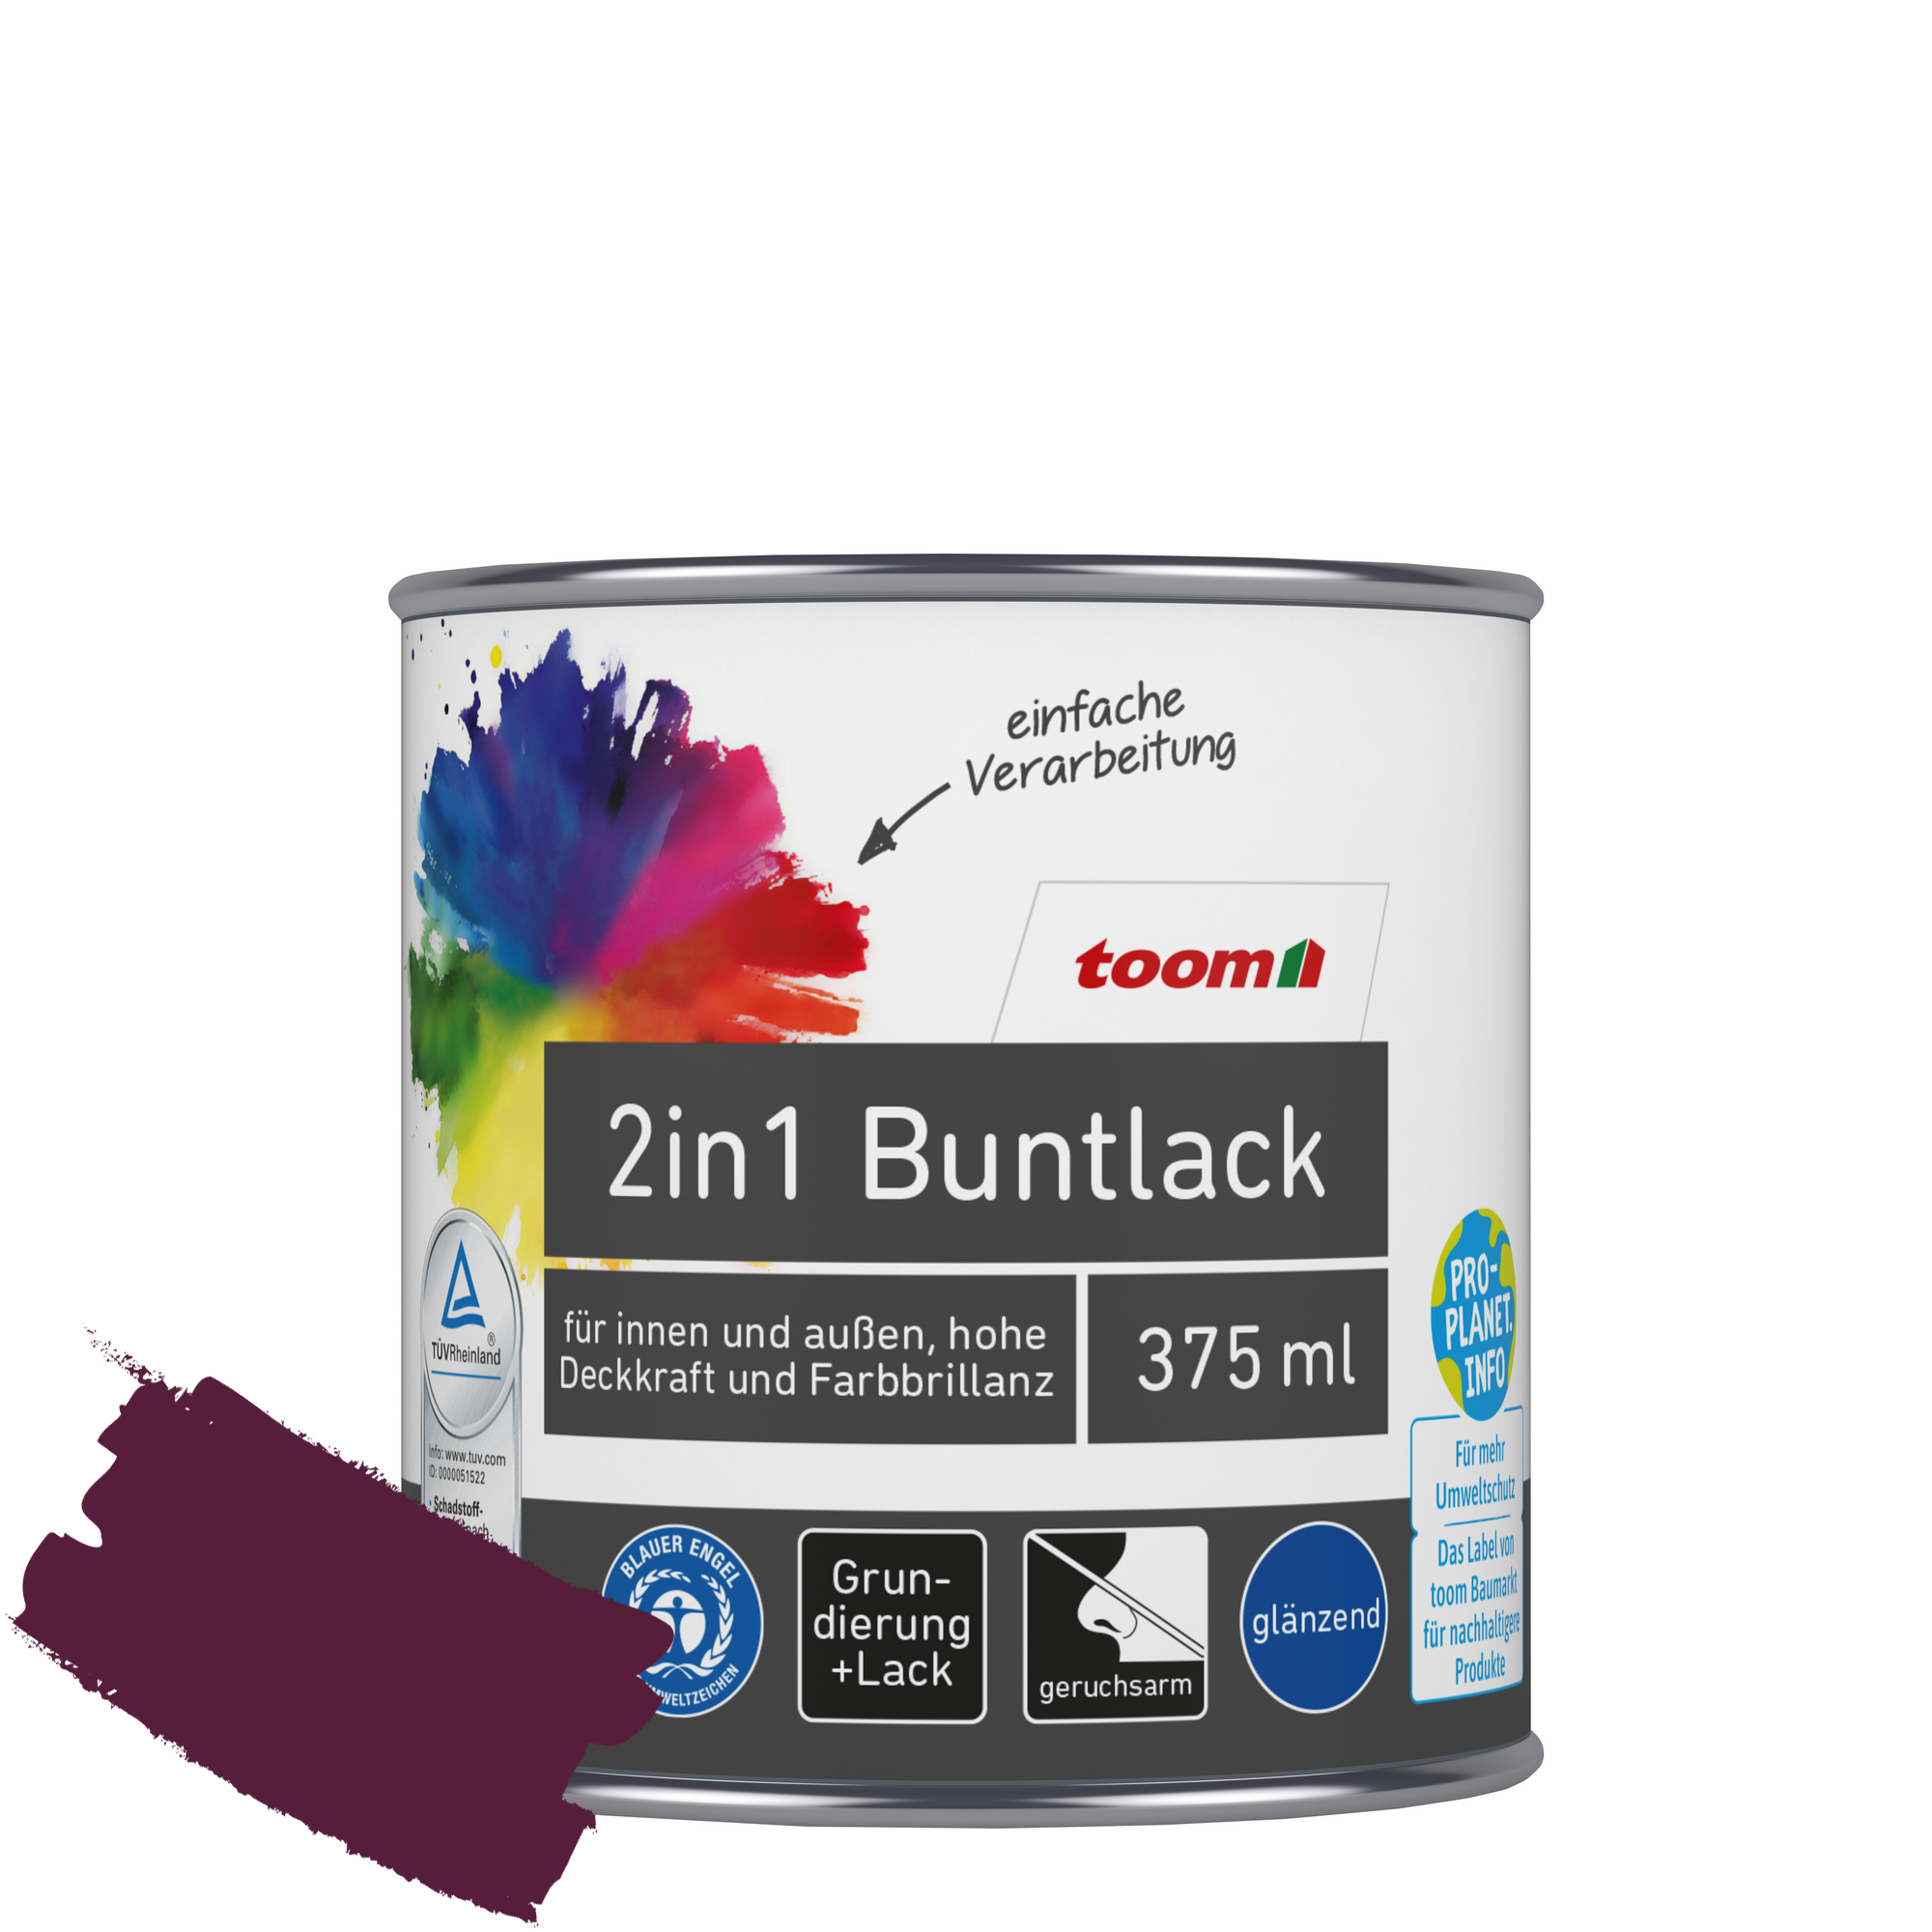 2in1 Buntlack merlotfarben glänzend 375 ml + product picture